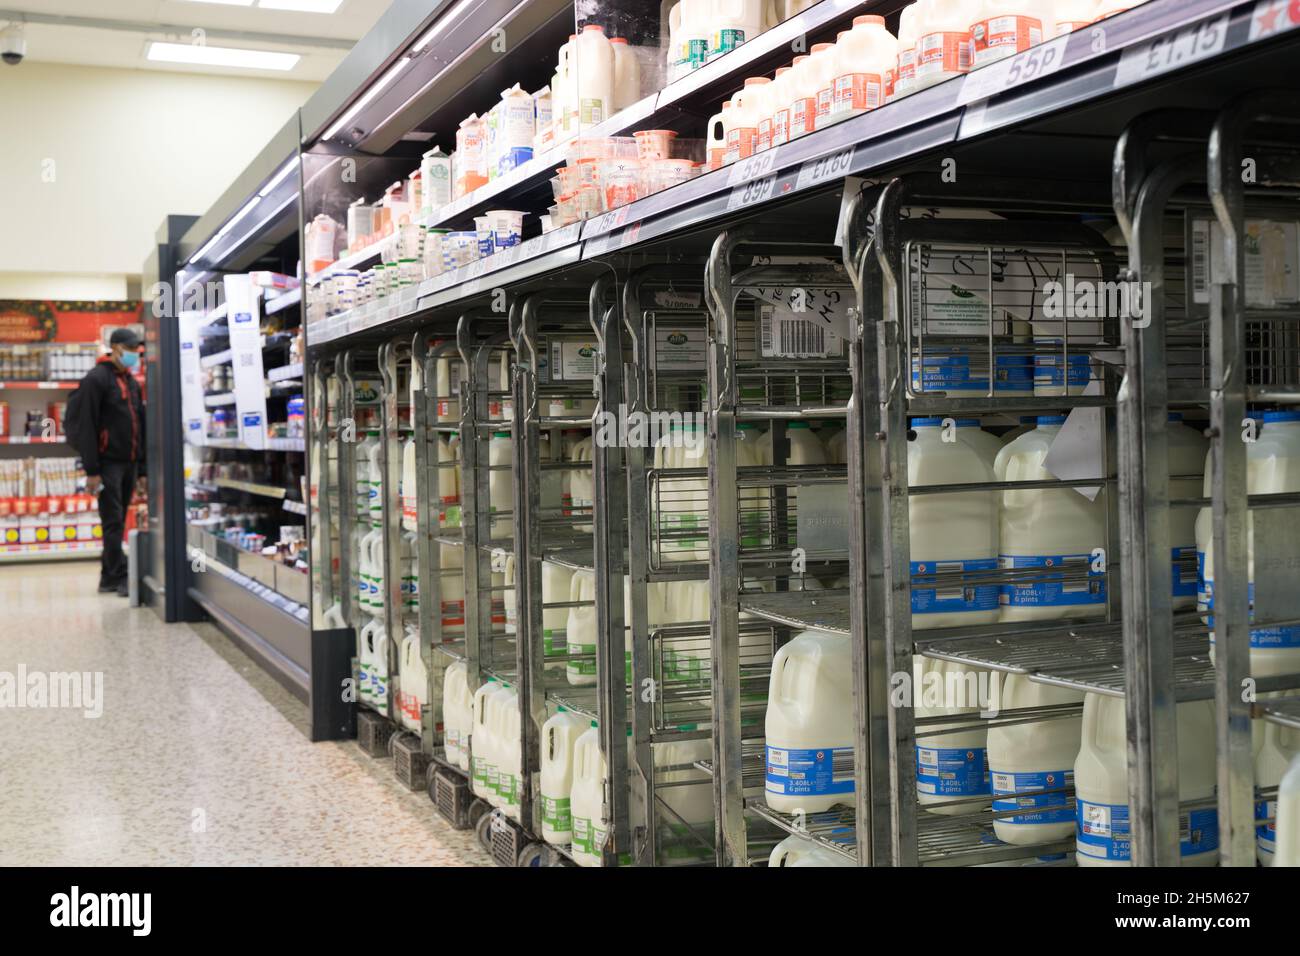 Bonnes fournitures de laits à Dairy allée au supermarché Tesco Londres Angleterre Royaume-Uni Banque D'Images